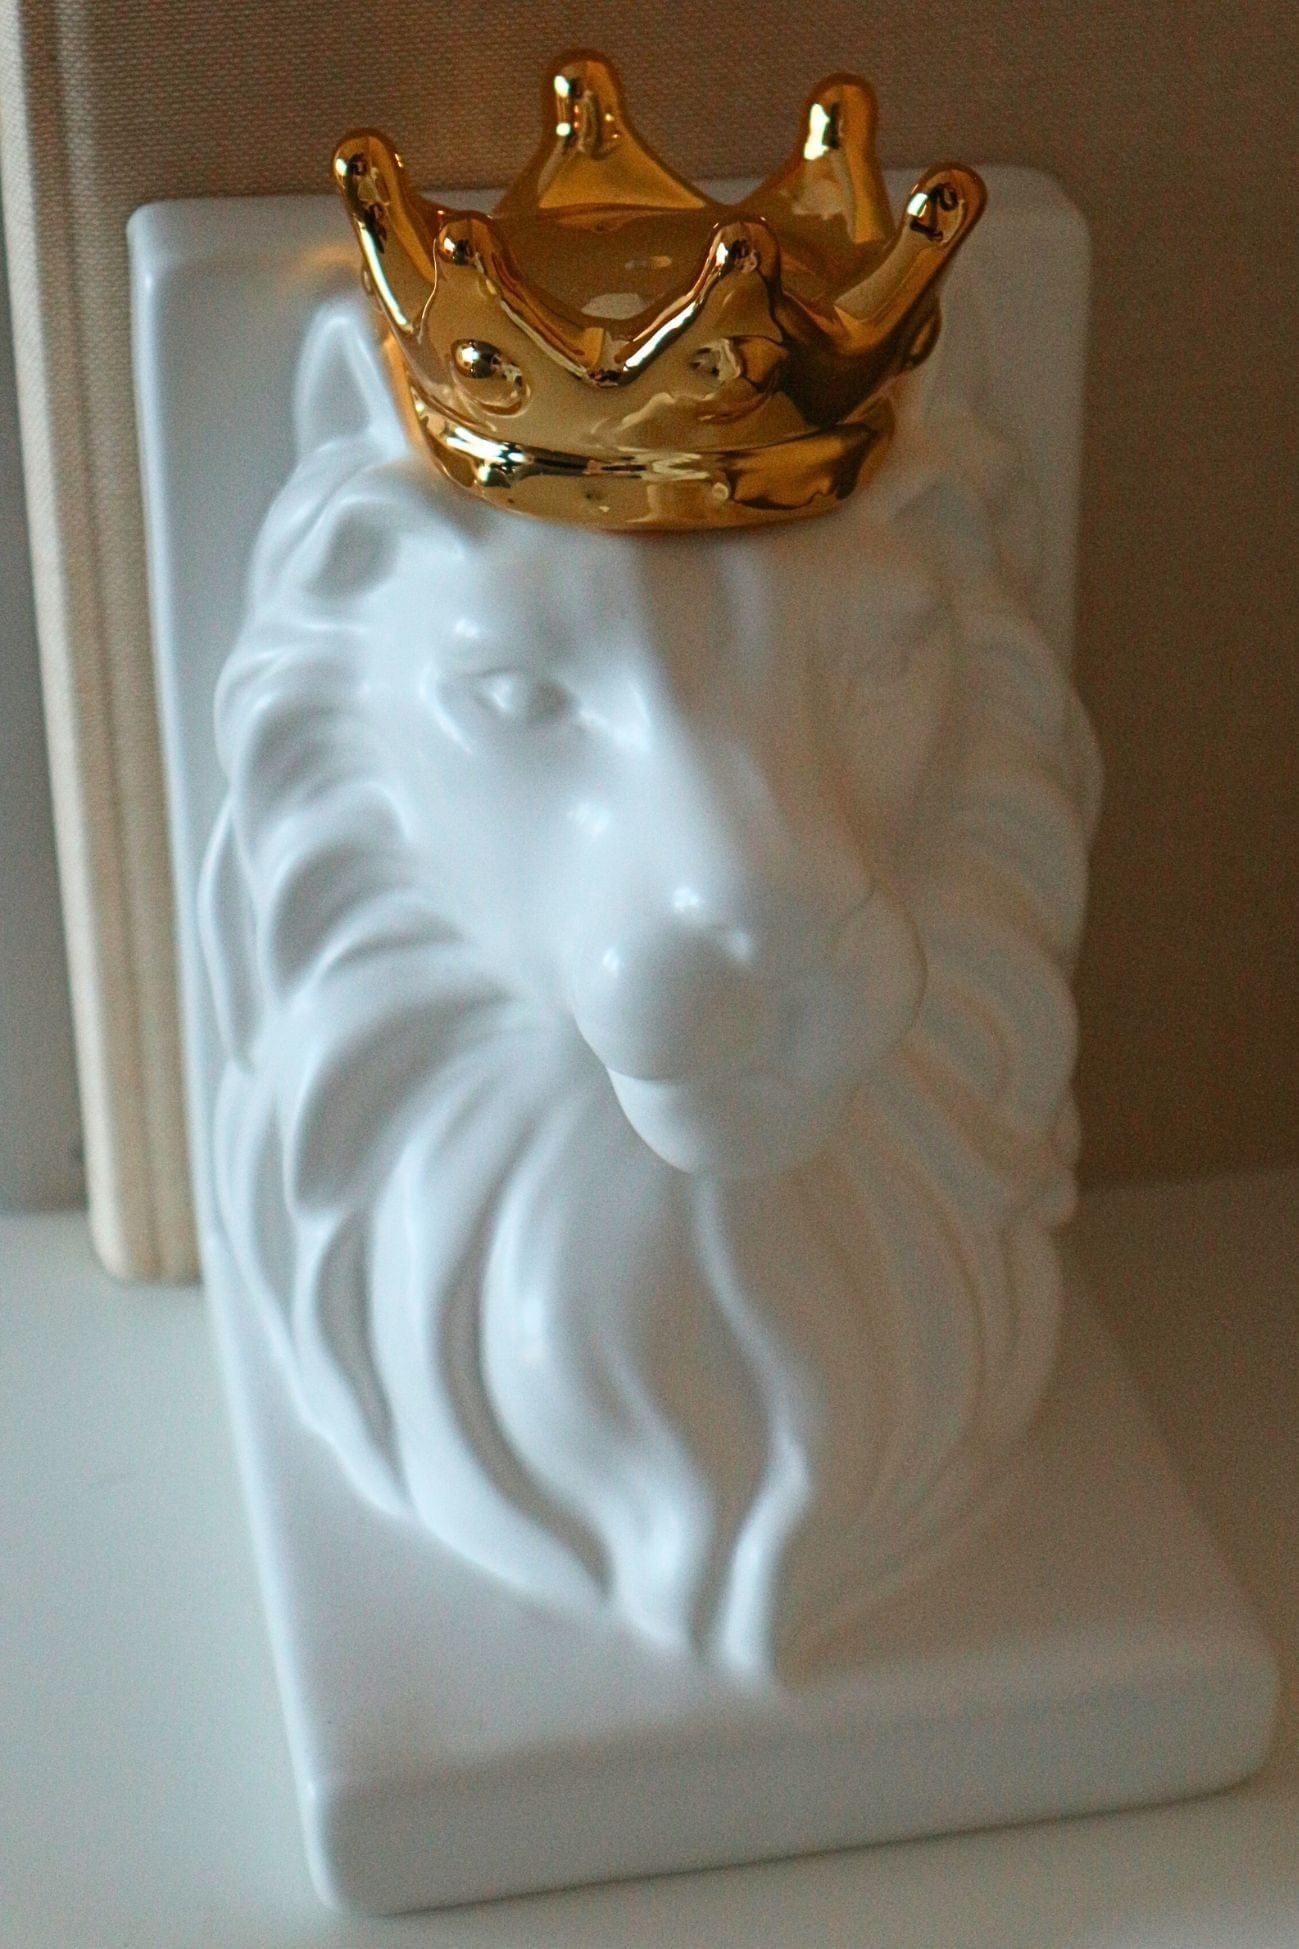 Item International King King - Set di 2 fermalibri a forma di leone in porcellana bianca | Item International